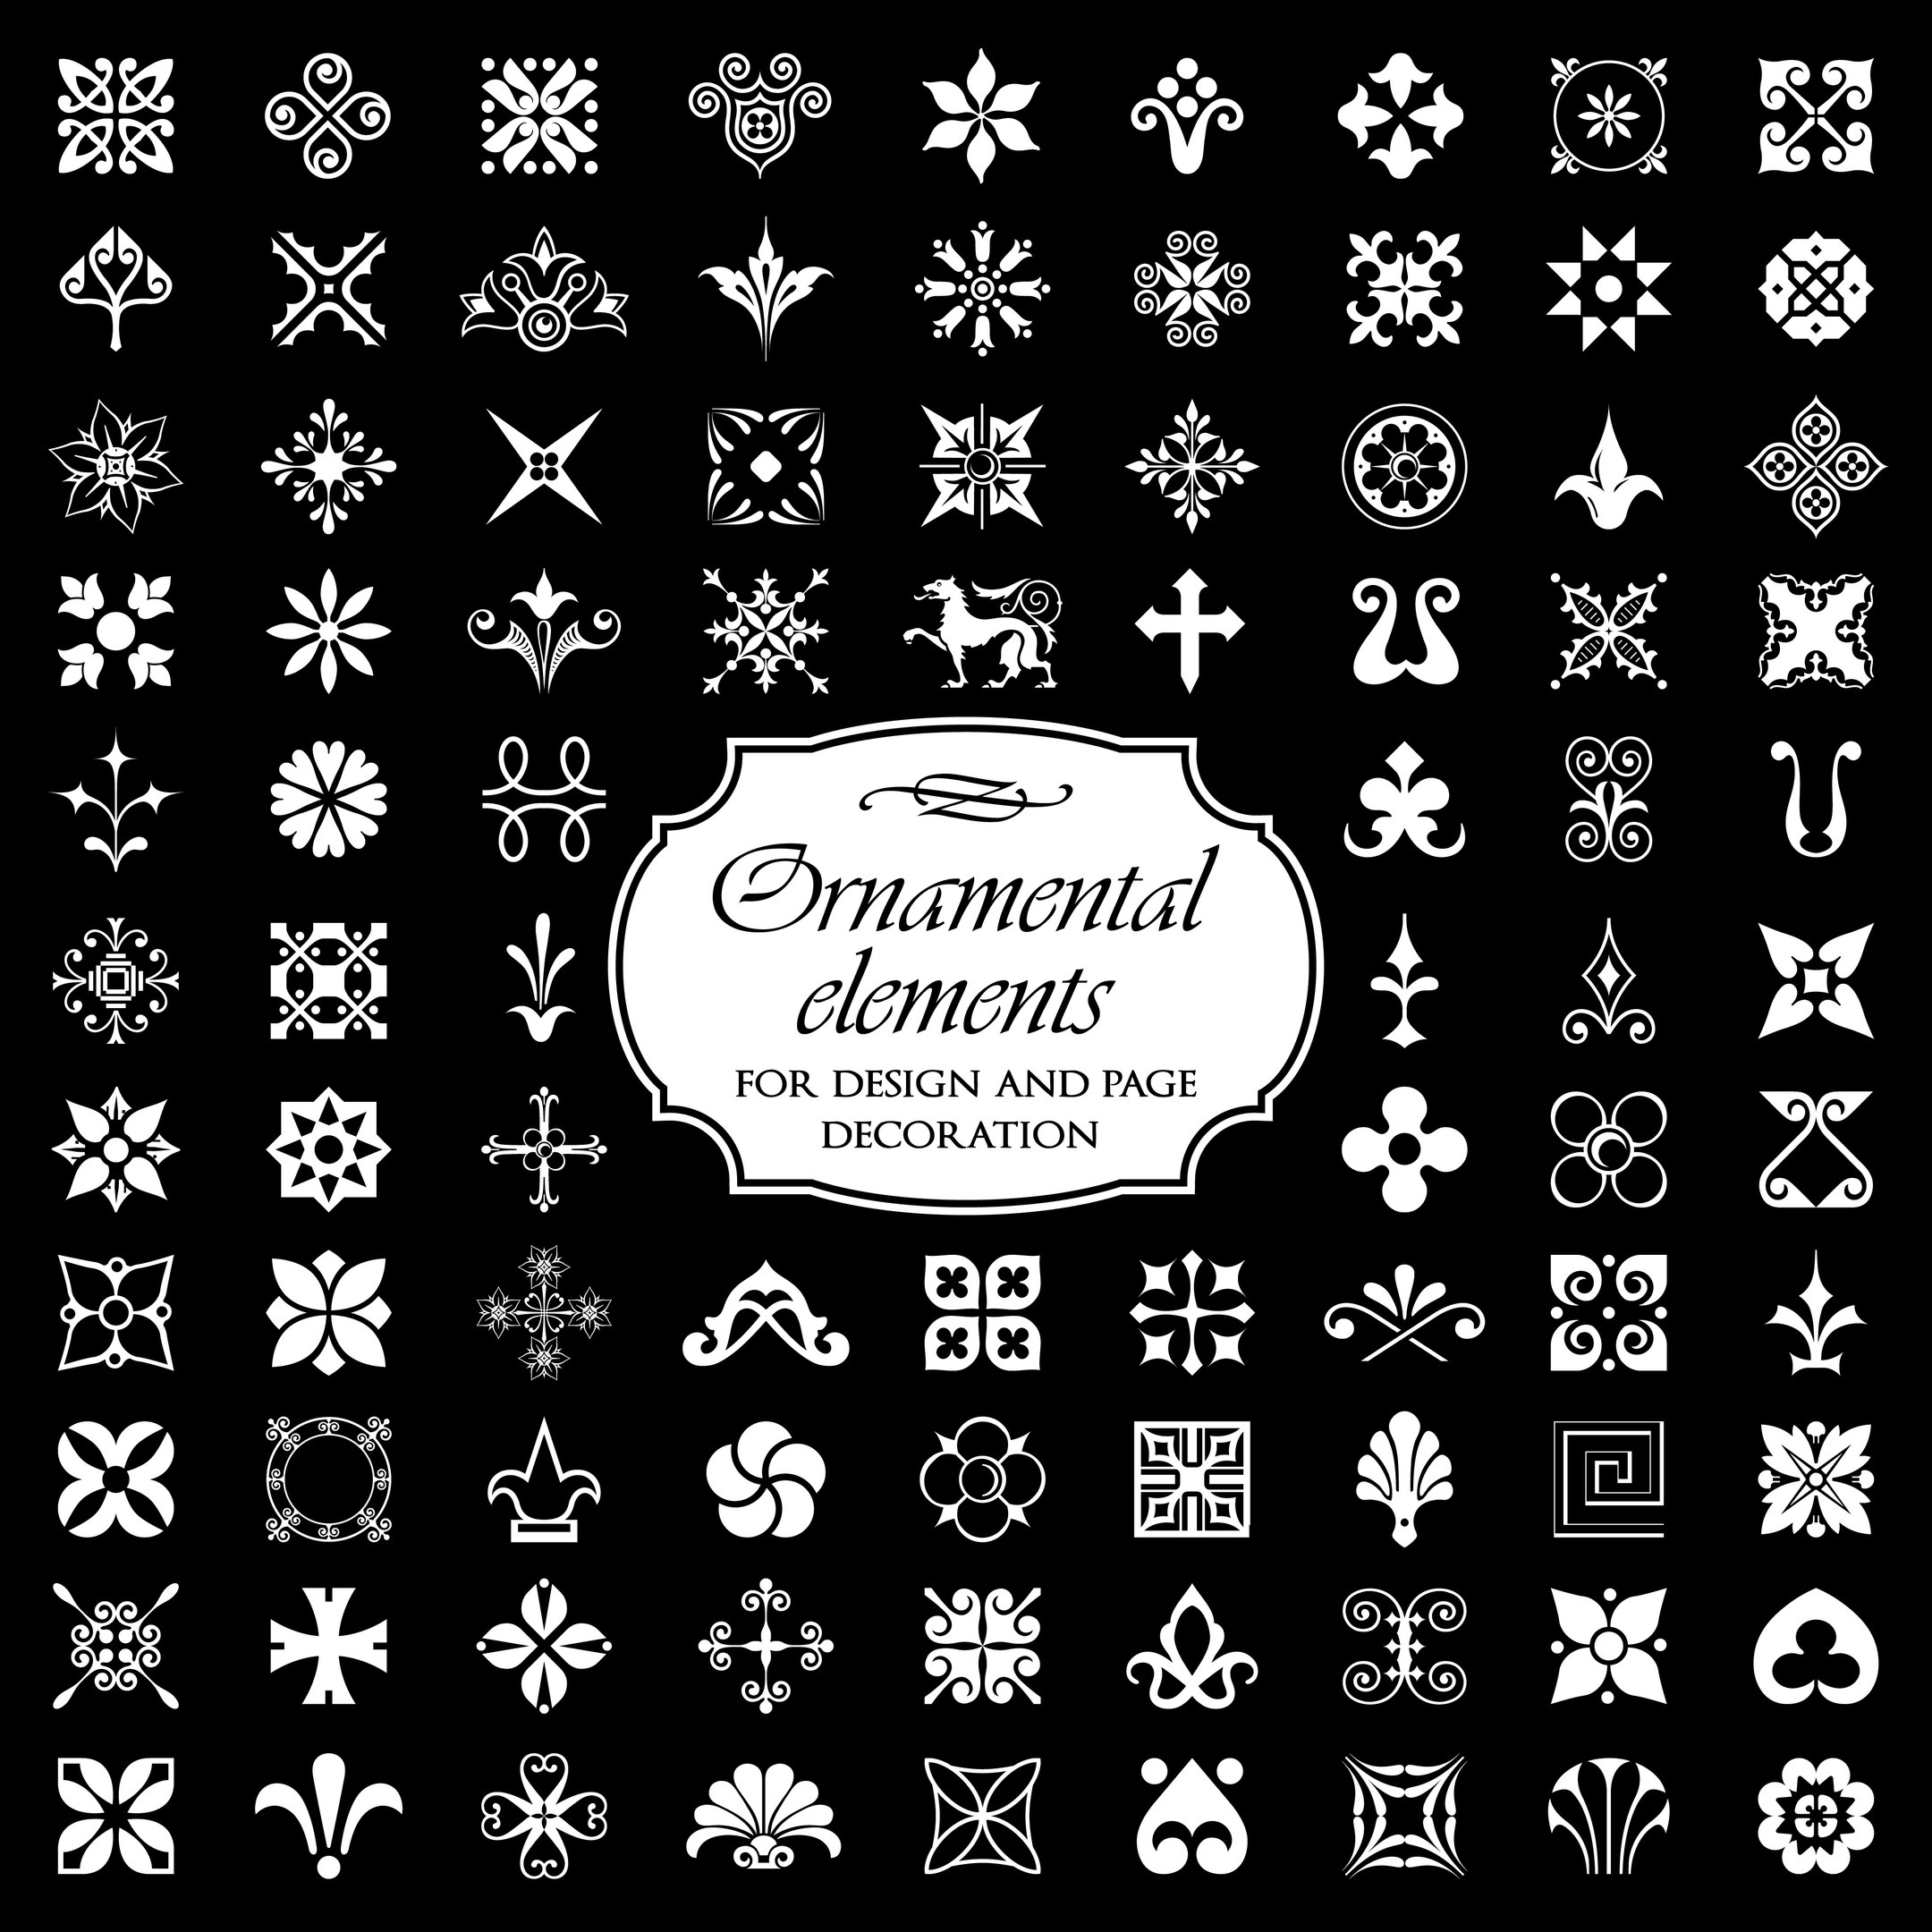 Elementi ornamentali